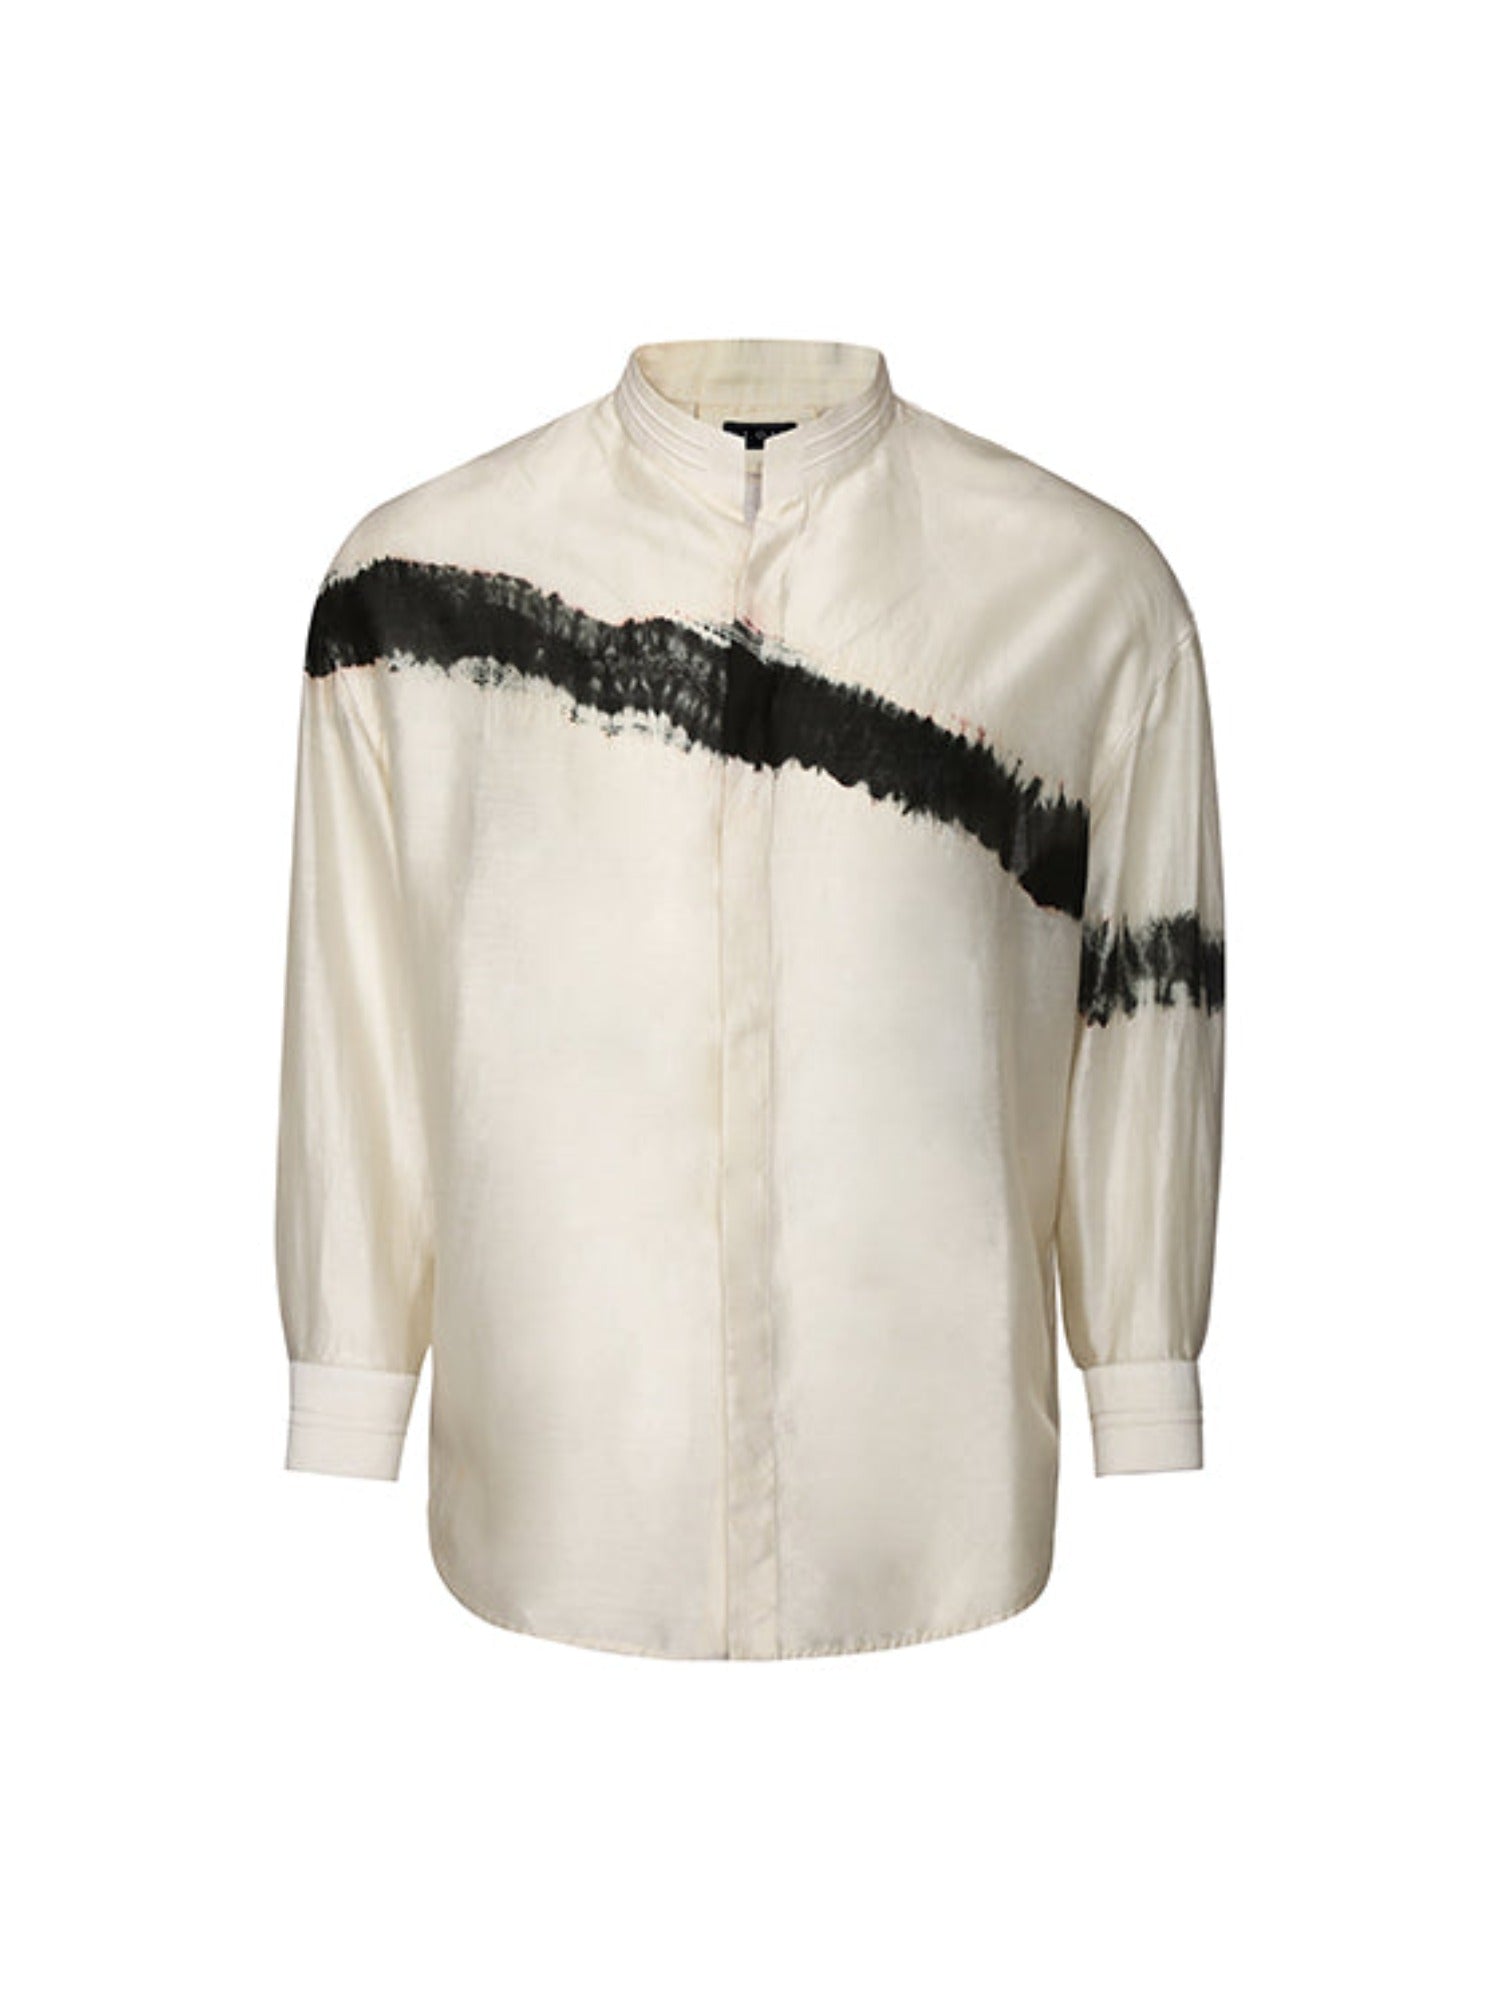 Classic tie-dye stripe button down shirt